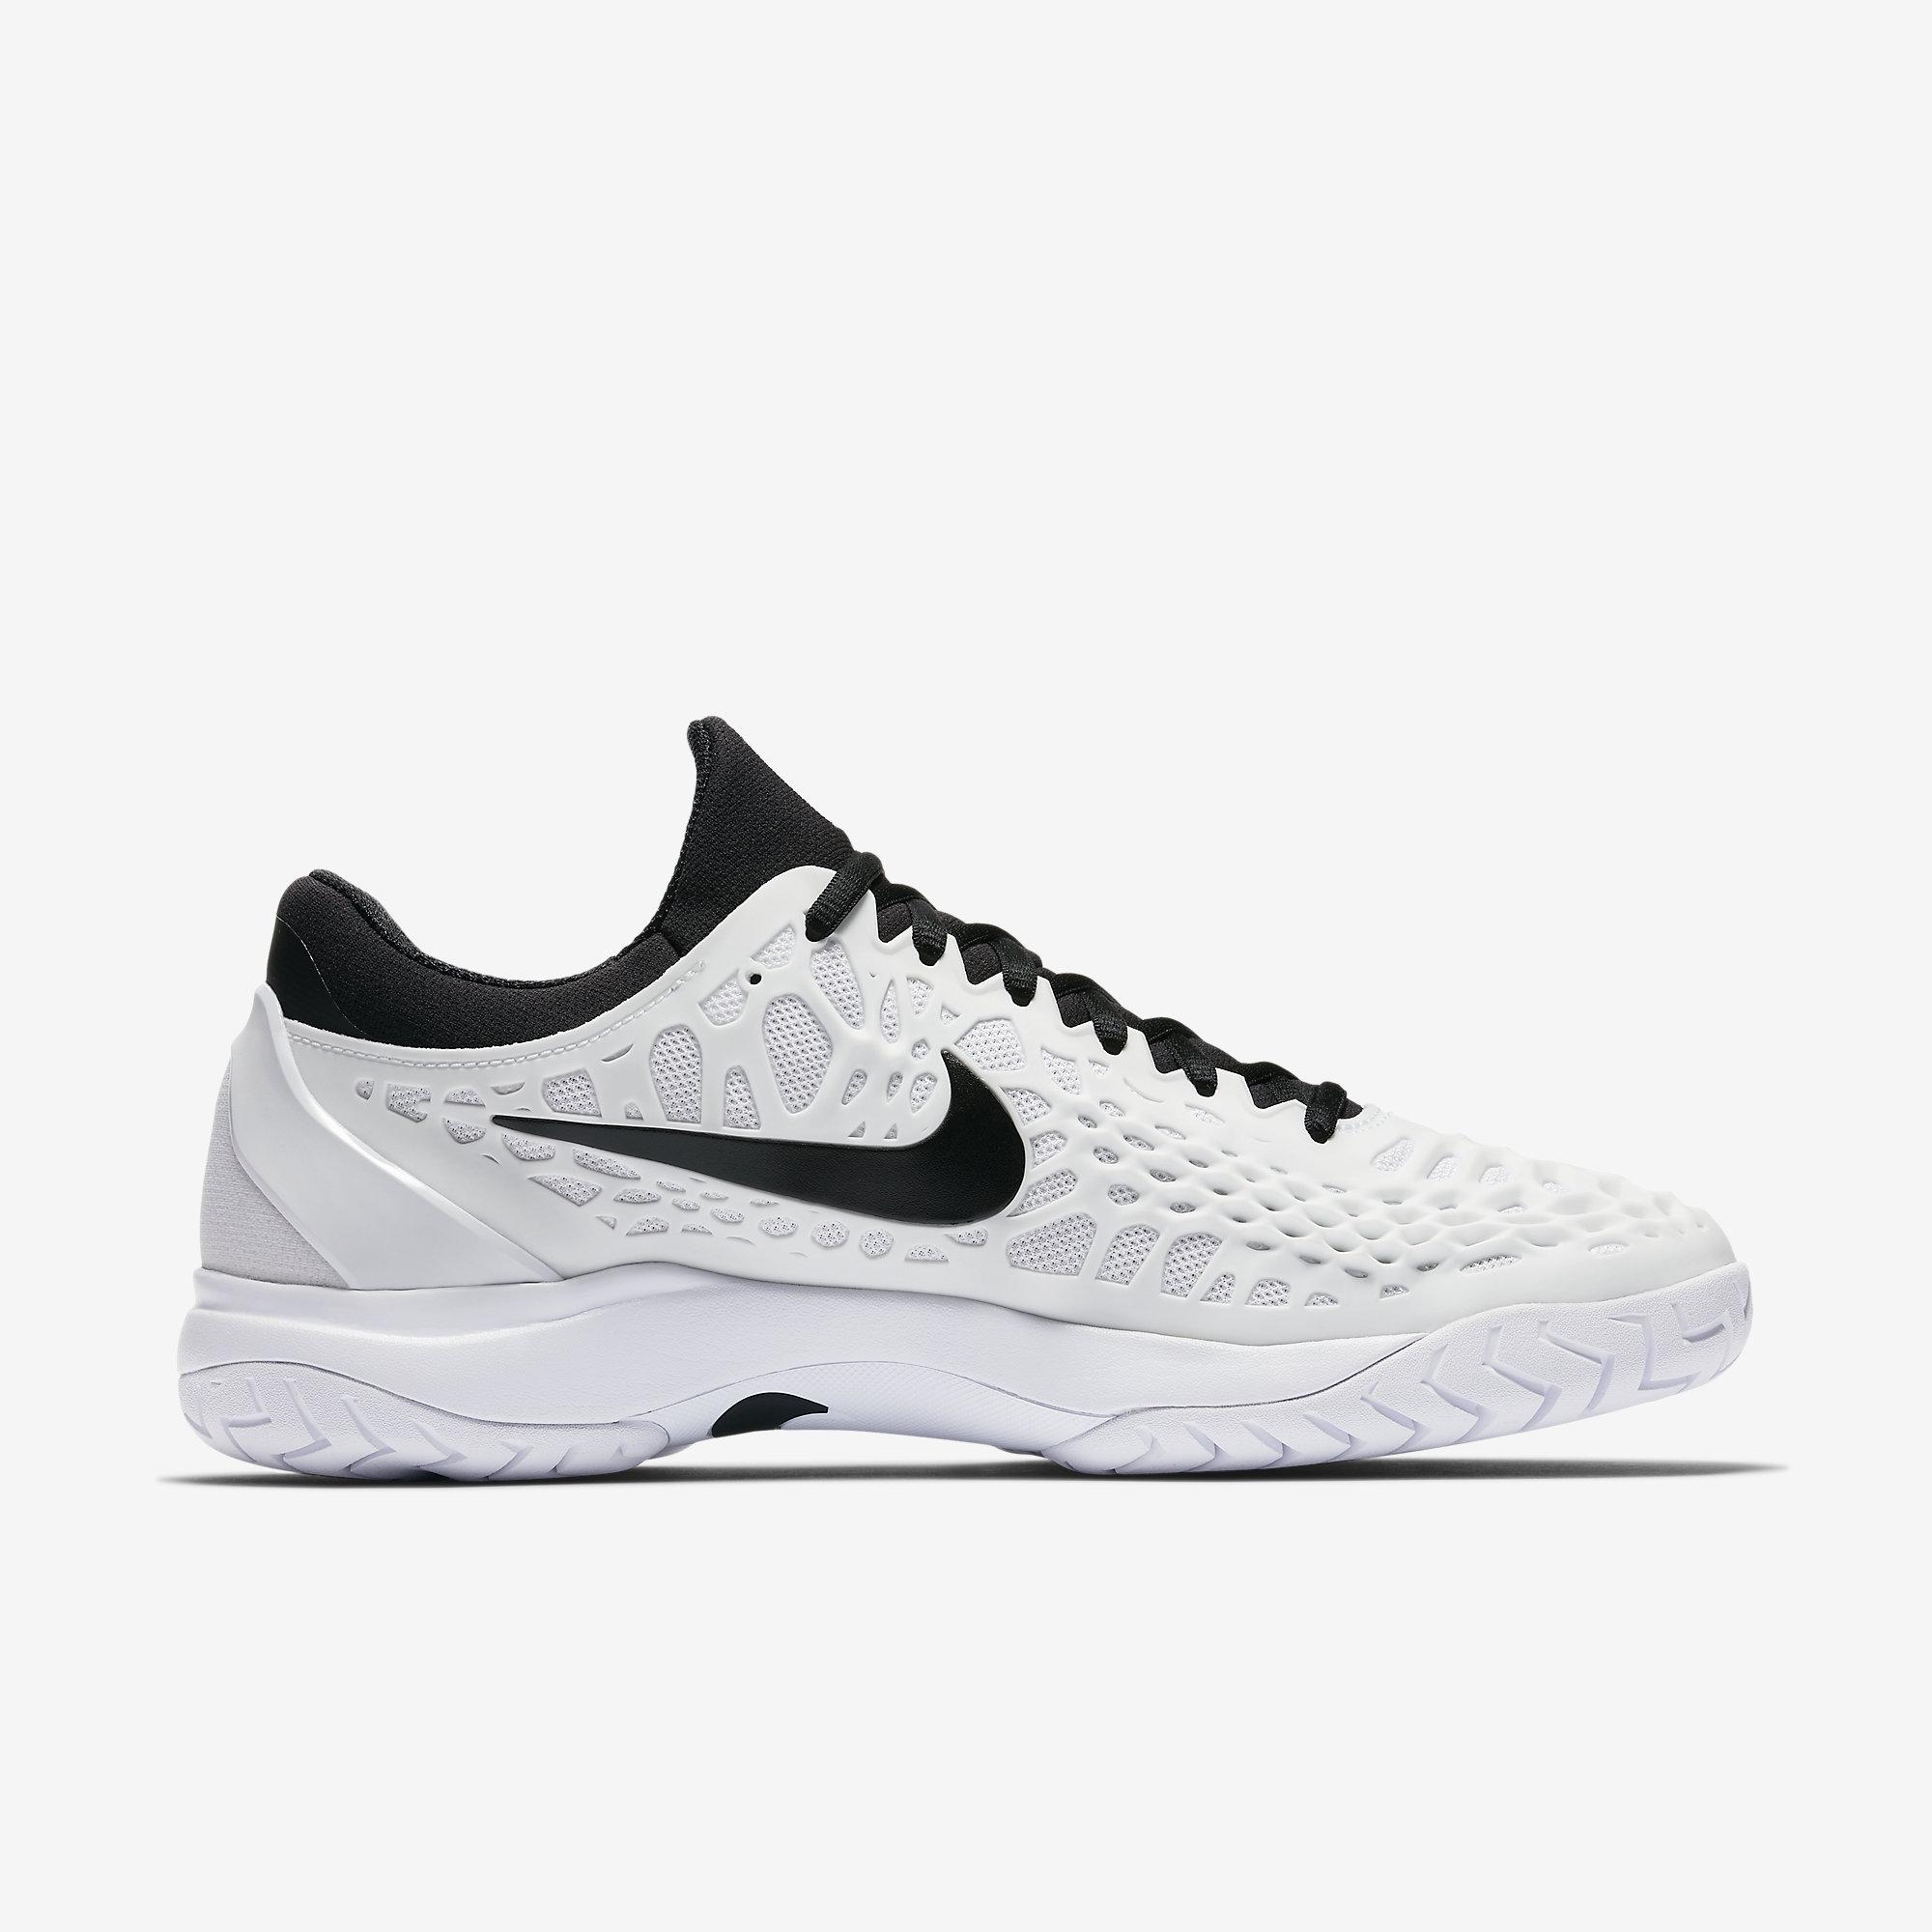 Nike Mens Zoom Cage 3 Tennis Shoes - White/Black - Tennisnuts.com